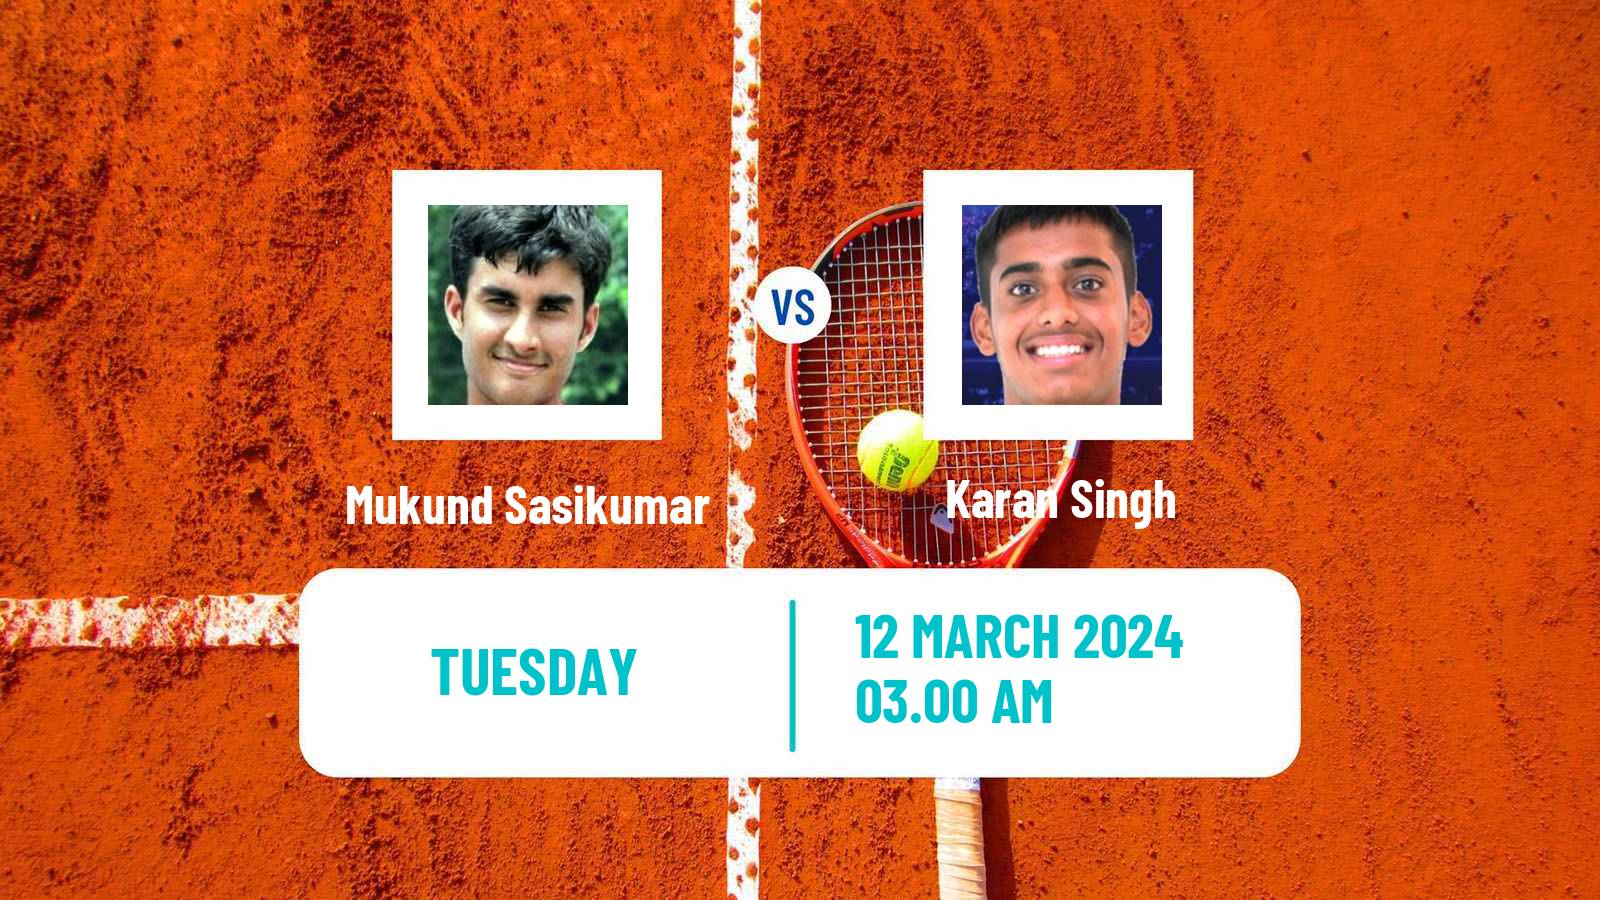 Tennis ITF M25 New Delhi Men Mukund Sasikumar - Karan Singh